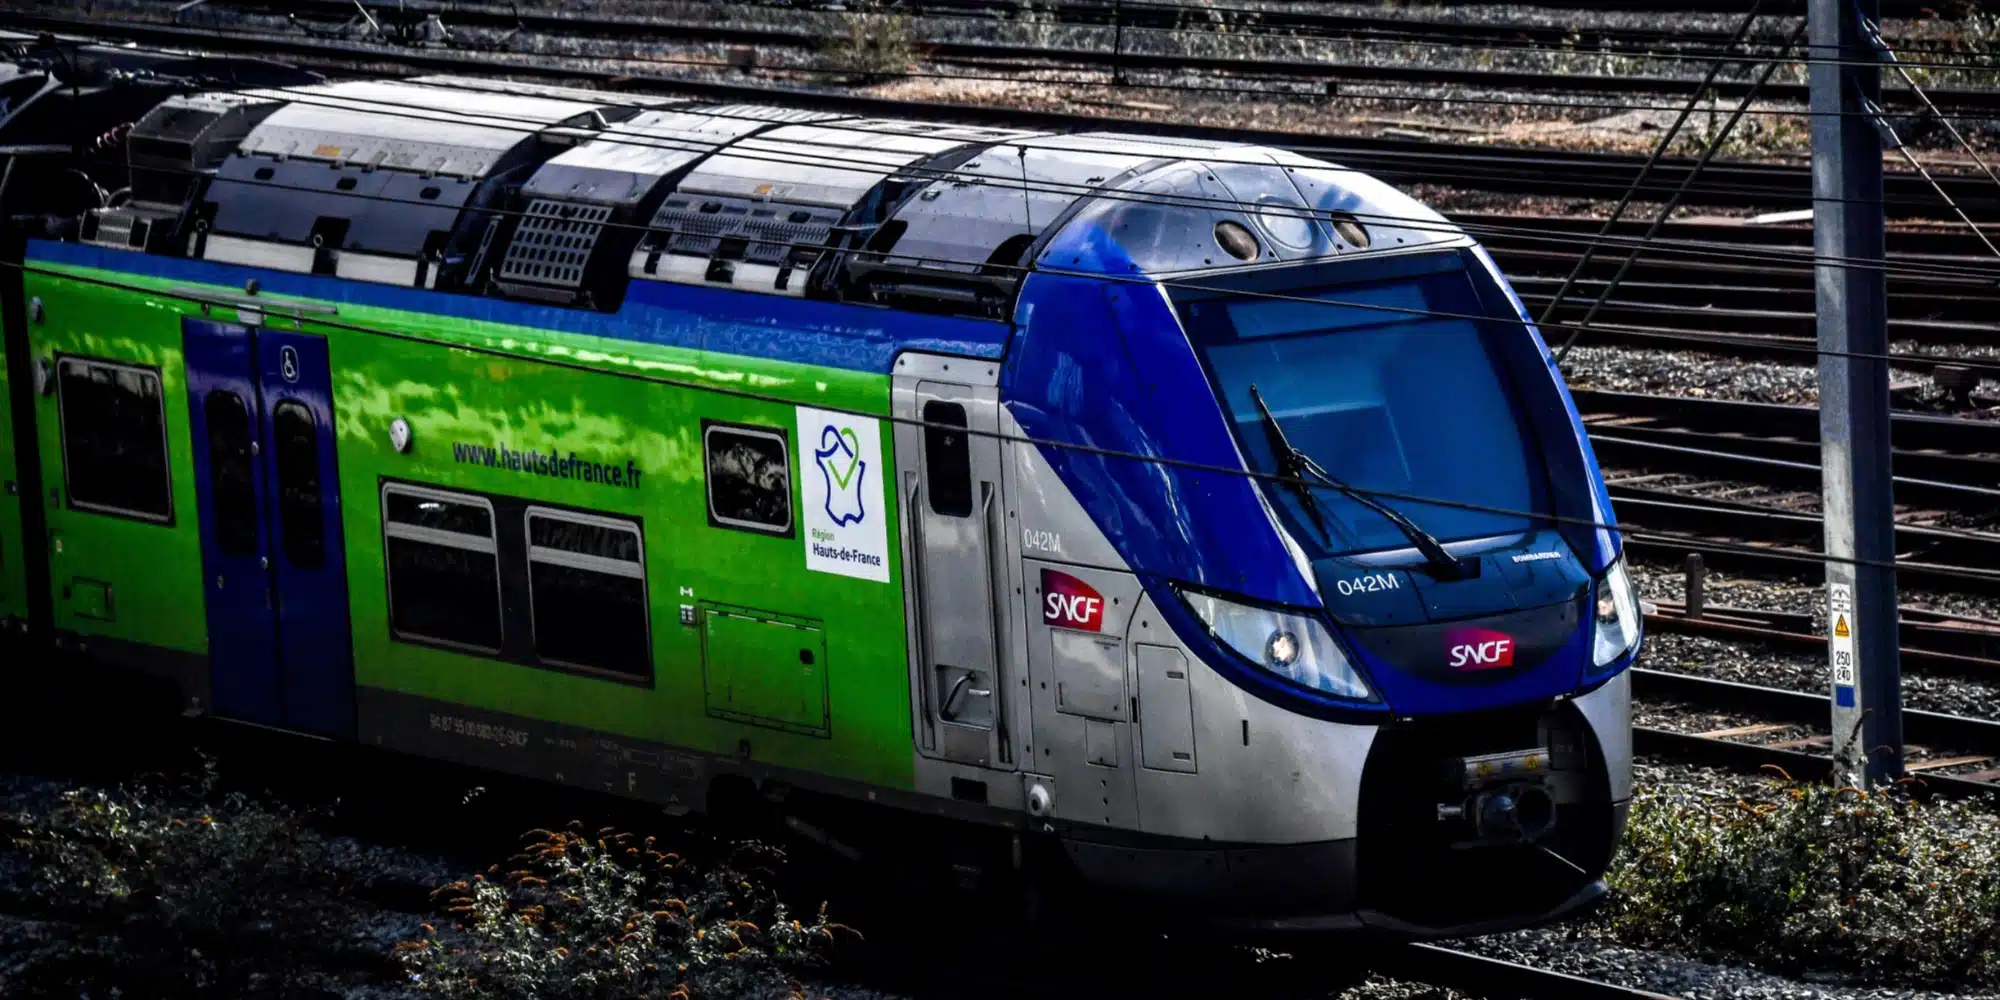 Transports : 75% des usagers jugent le train trop cher, selon une étude de la FNAUT